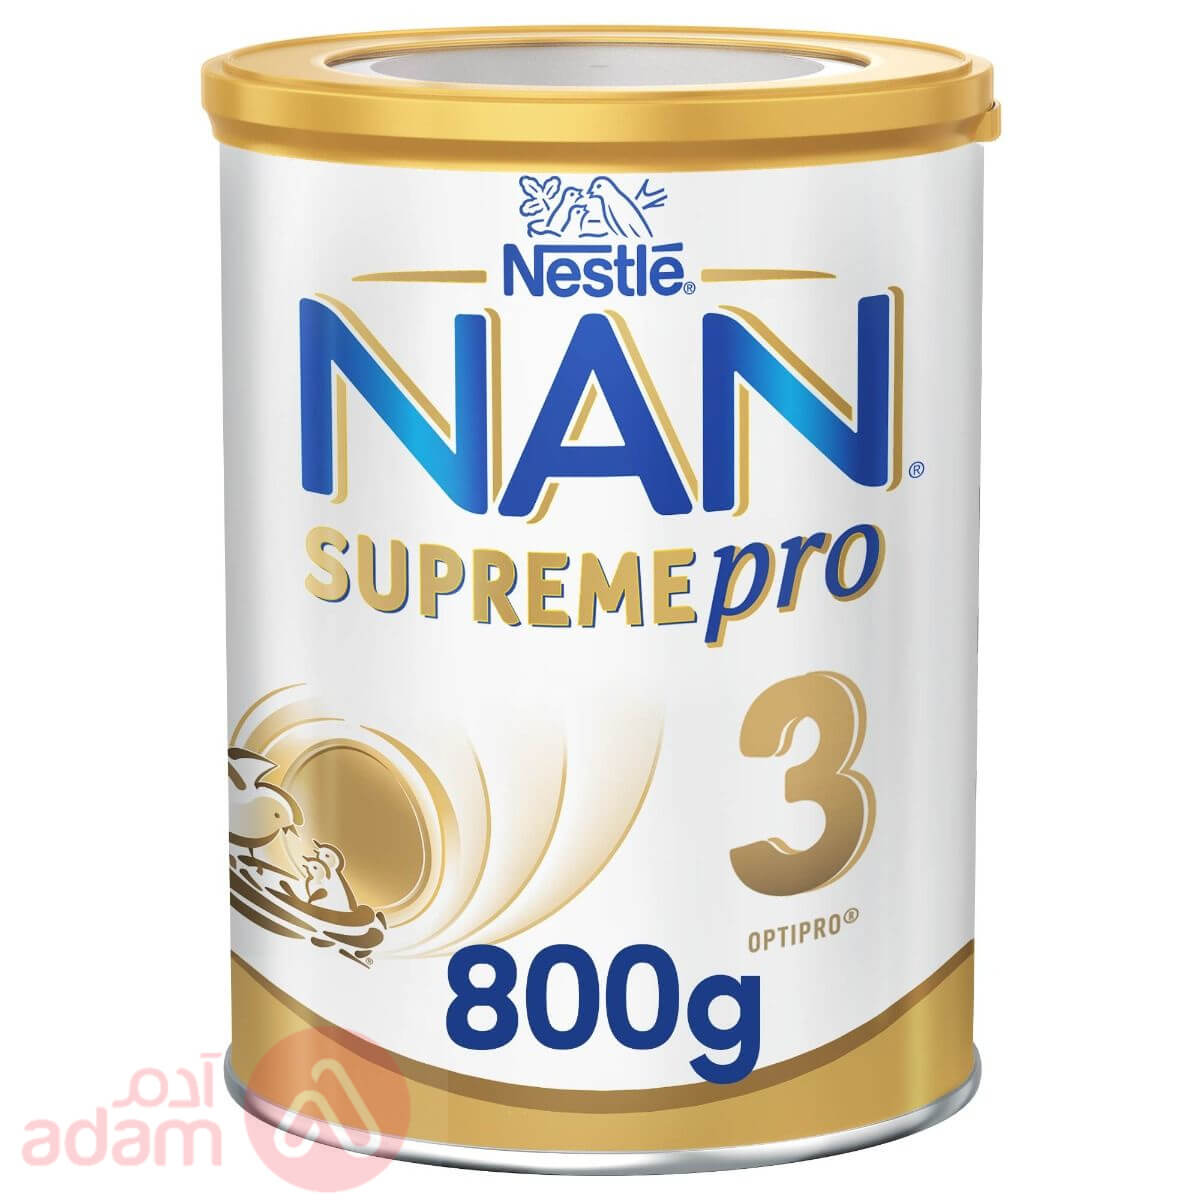 Nan Supreme Pro 3 800Gm